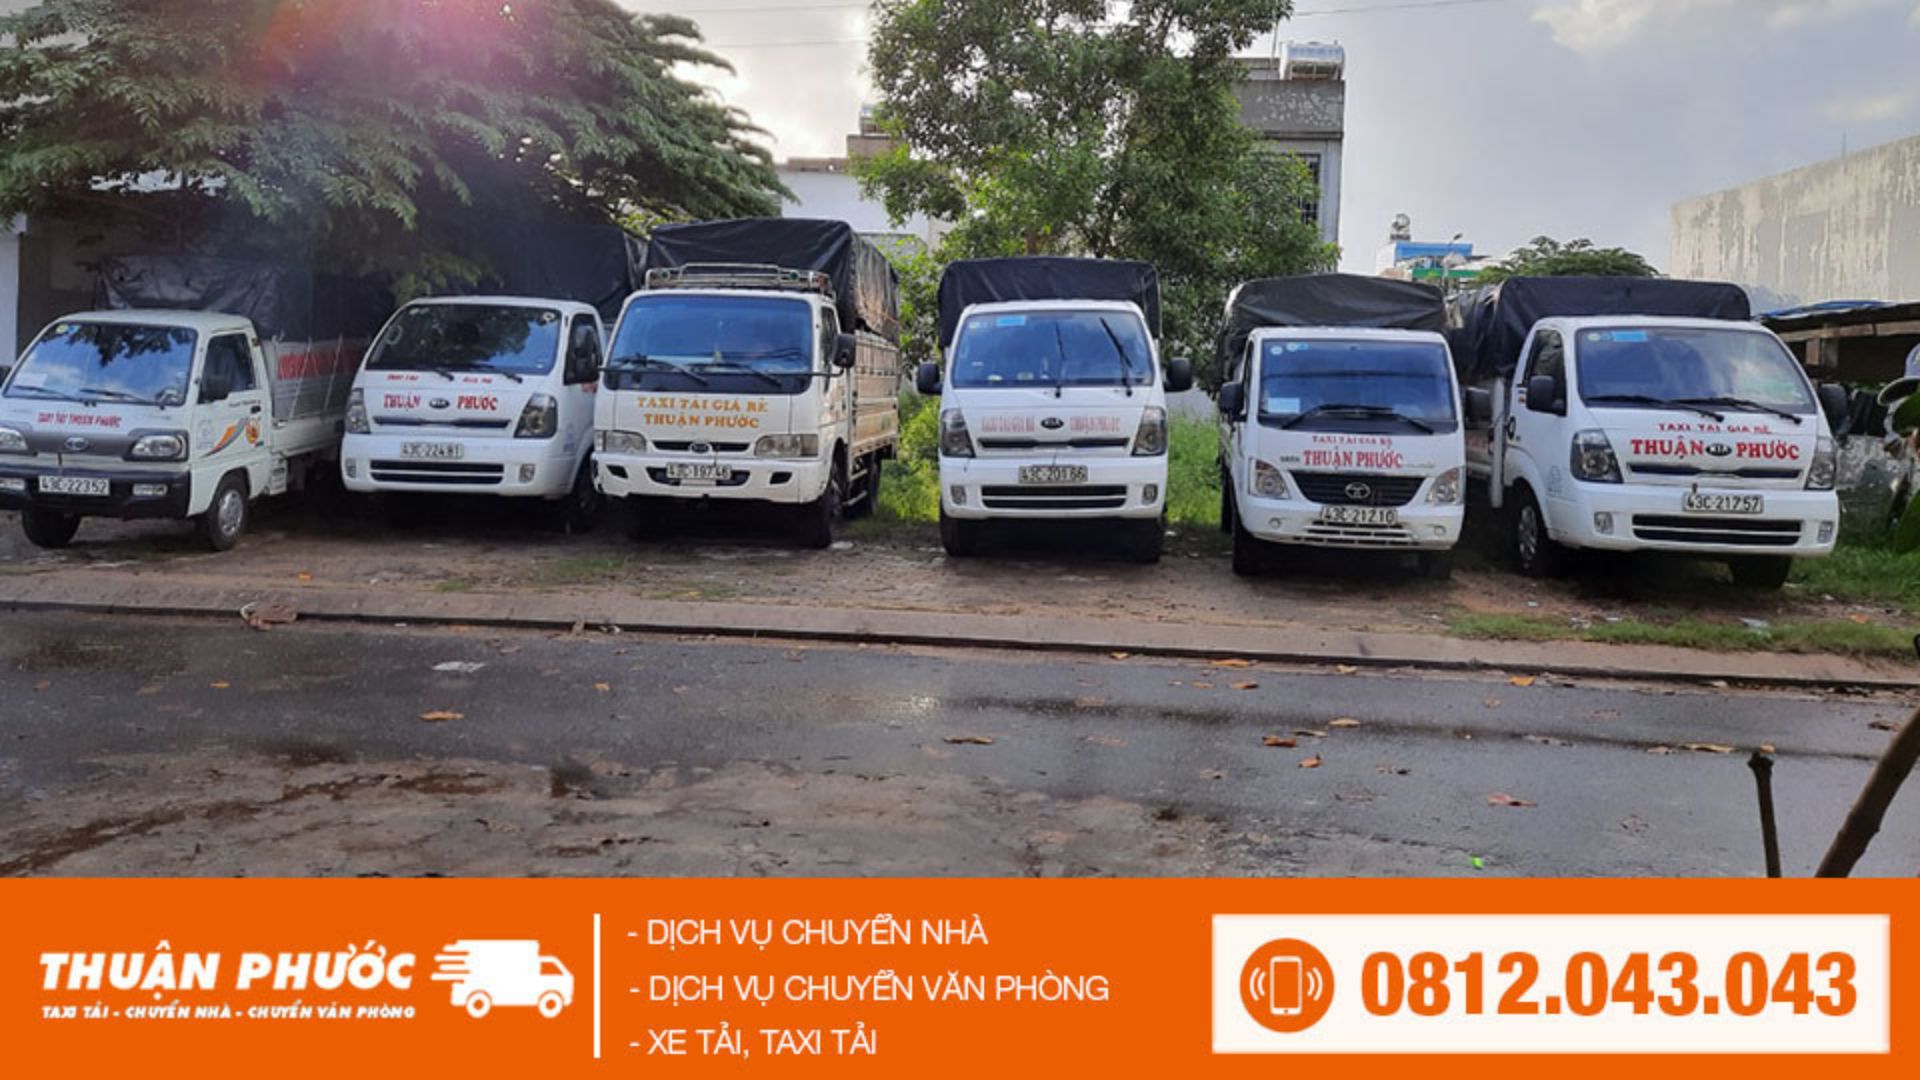 Taxi tải Thuận Phước - Dịch vụ chuyển trọ Đà Nẵng nhiệt tình